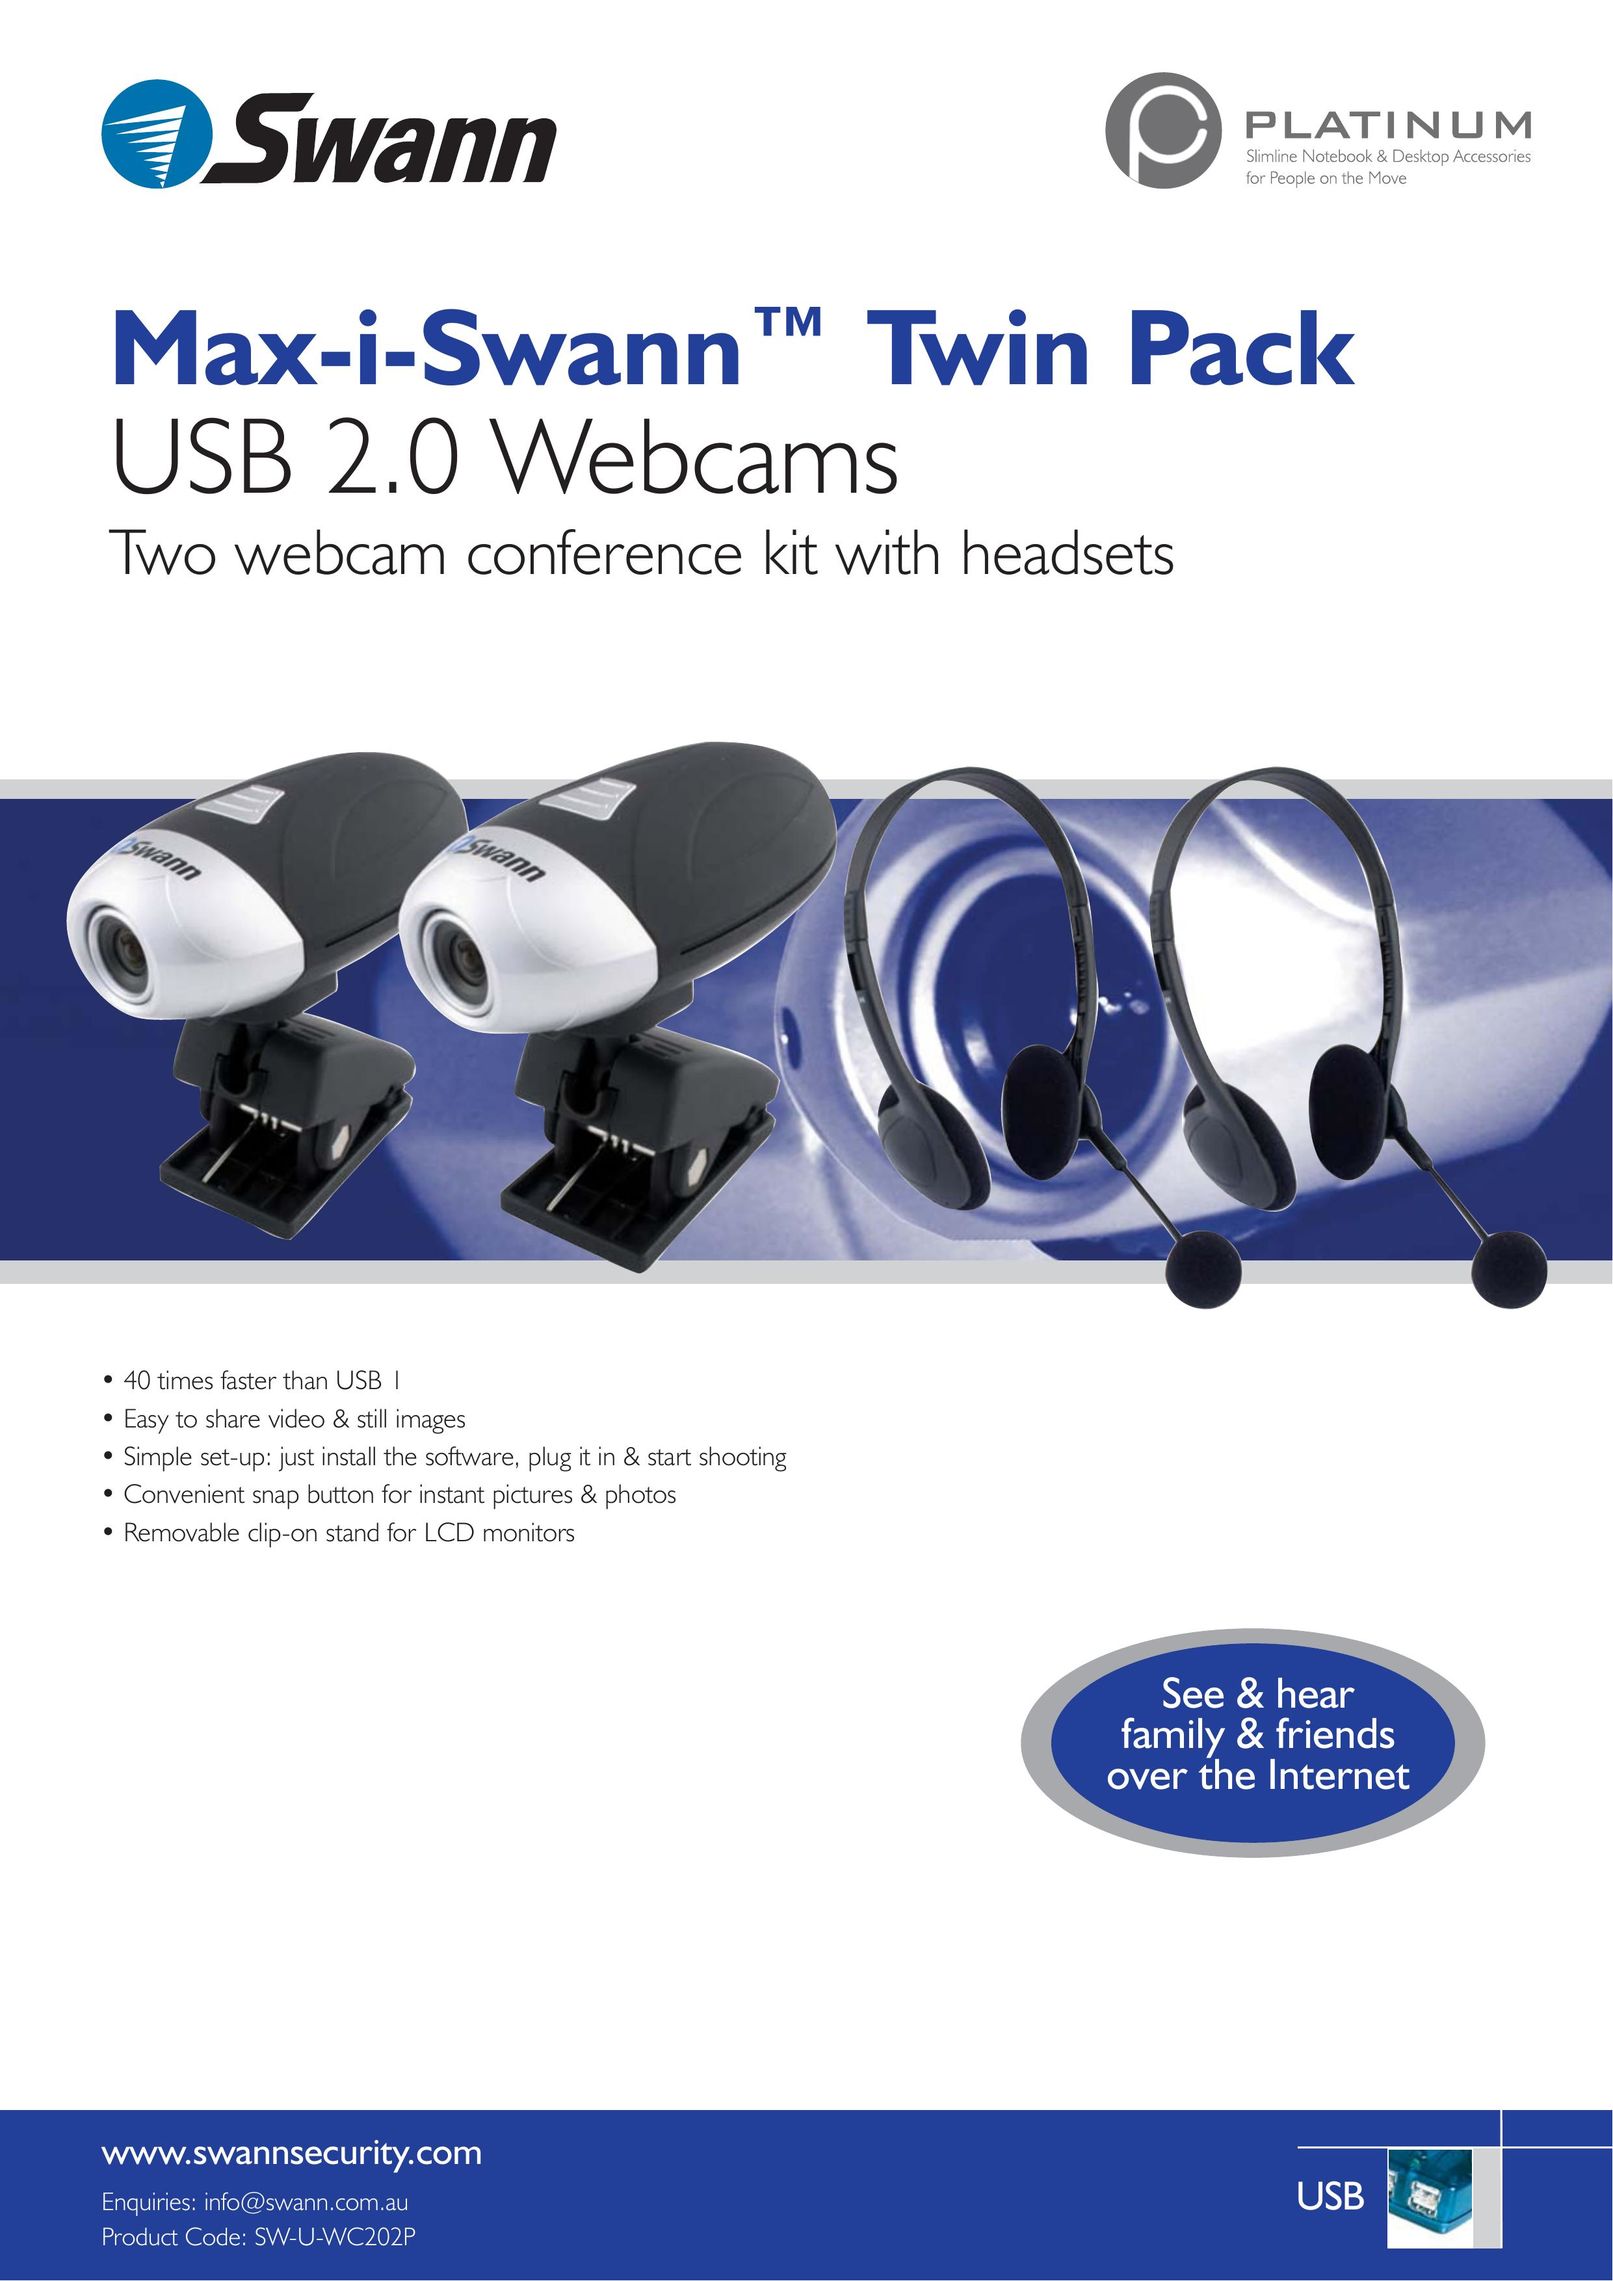 Swann Max-i-Swann Webcam User Manual